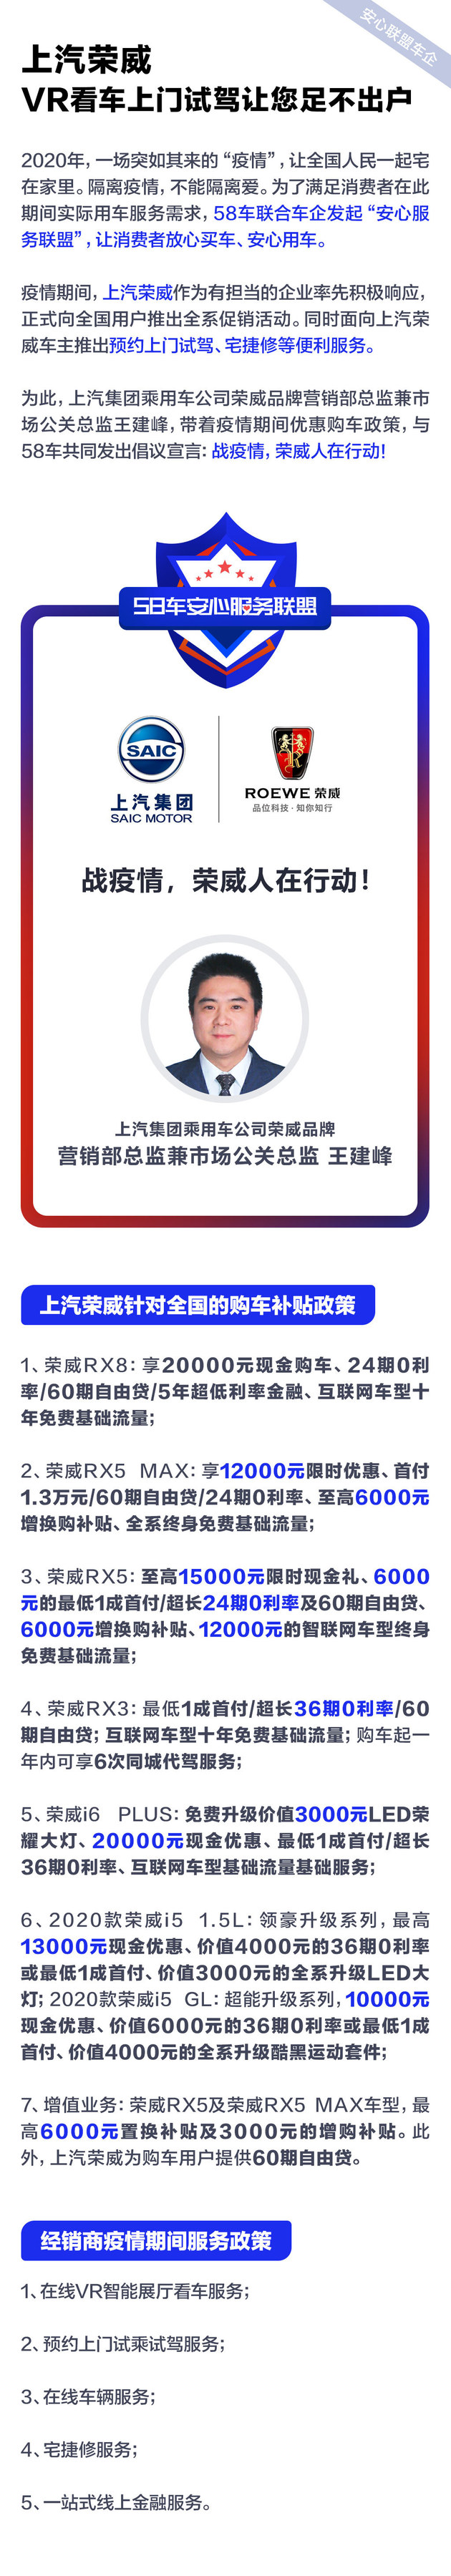 沐鸣2平台注册登录_上汽荣威 VR看车上门试驾让您足不出户